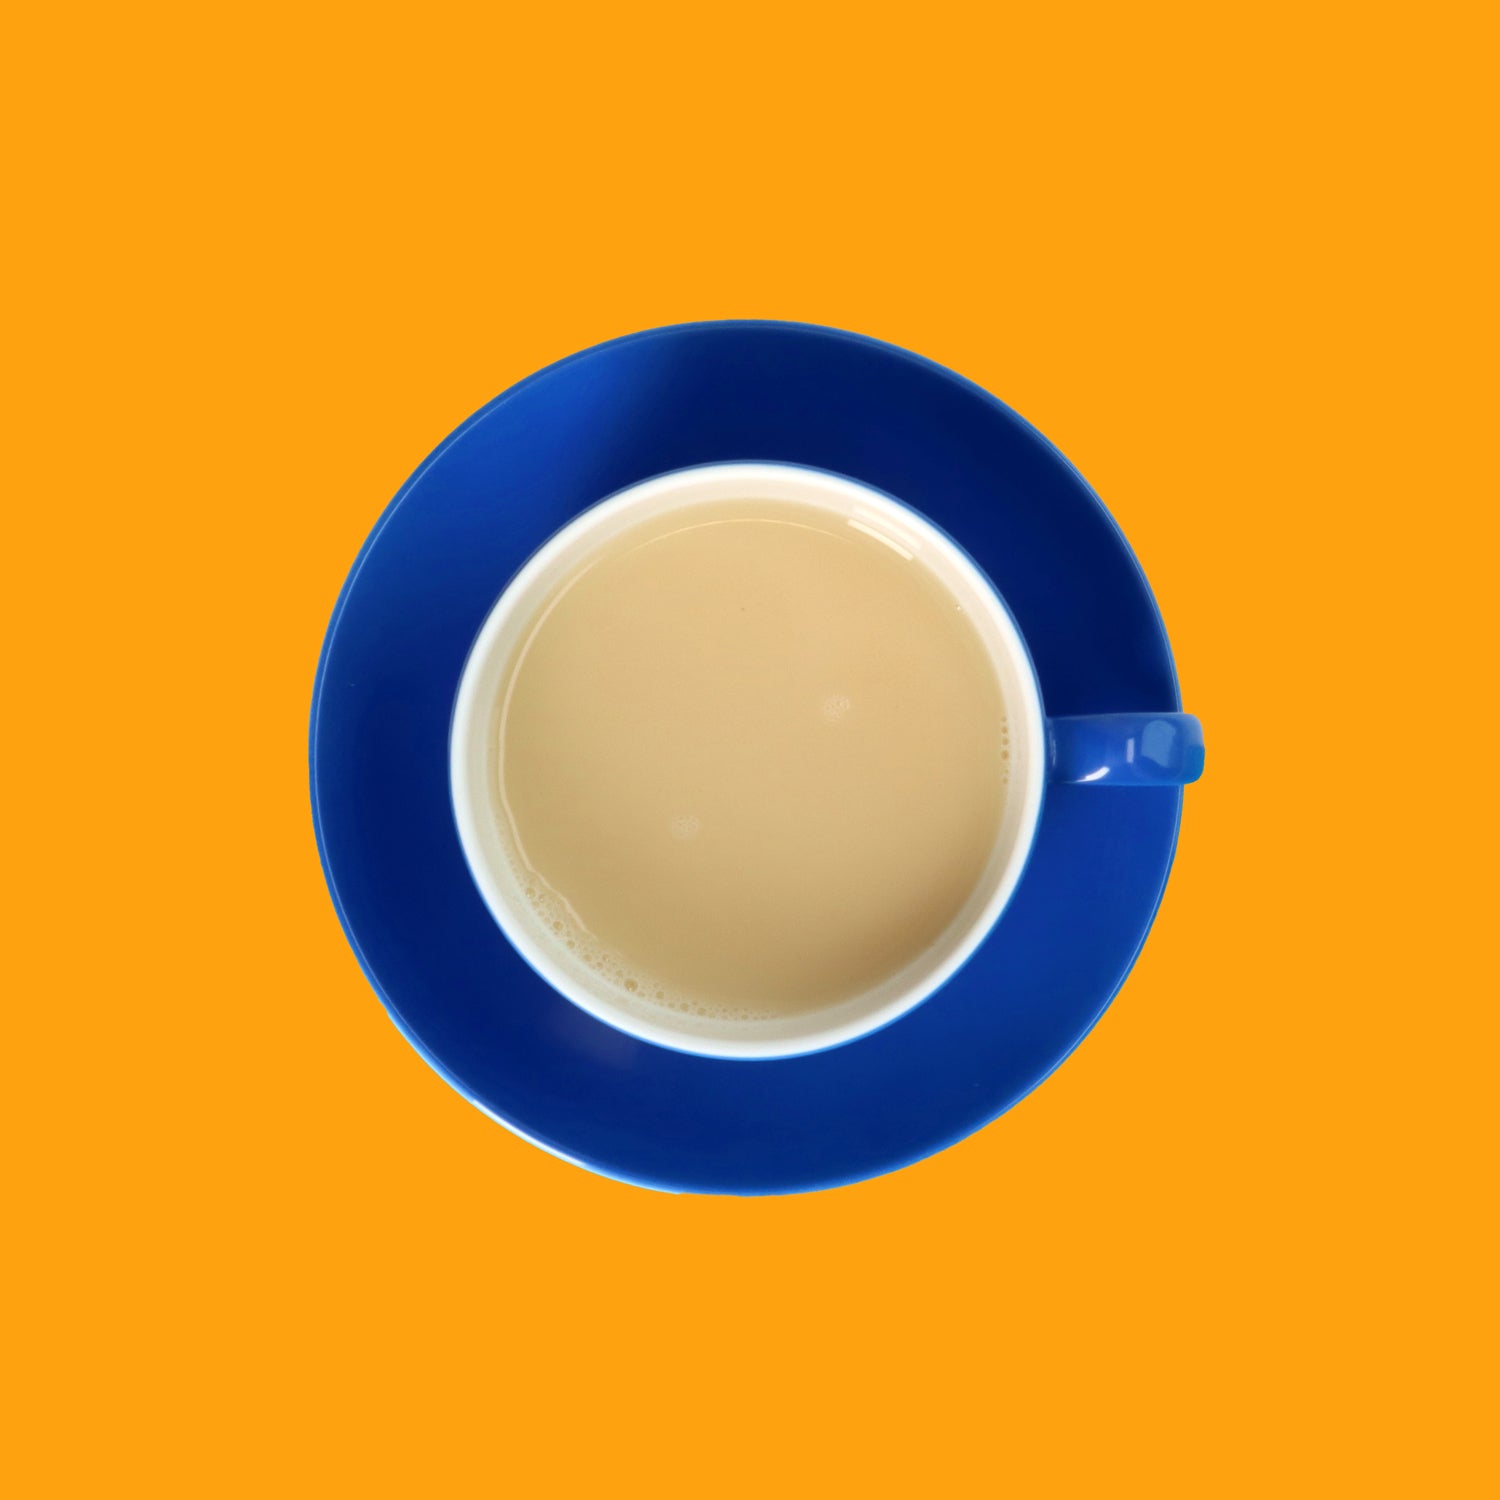 Drinkmich Hafermilchpulver Klassik Haferdrink zum Selbermixen Serviervorschlag in blauer Porzellantasse von oben vor orangem Hintergrund